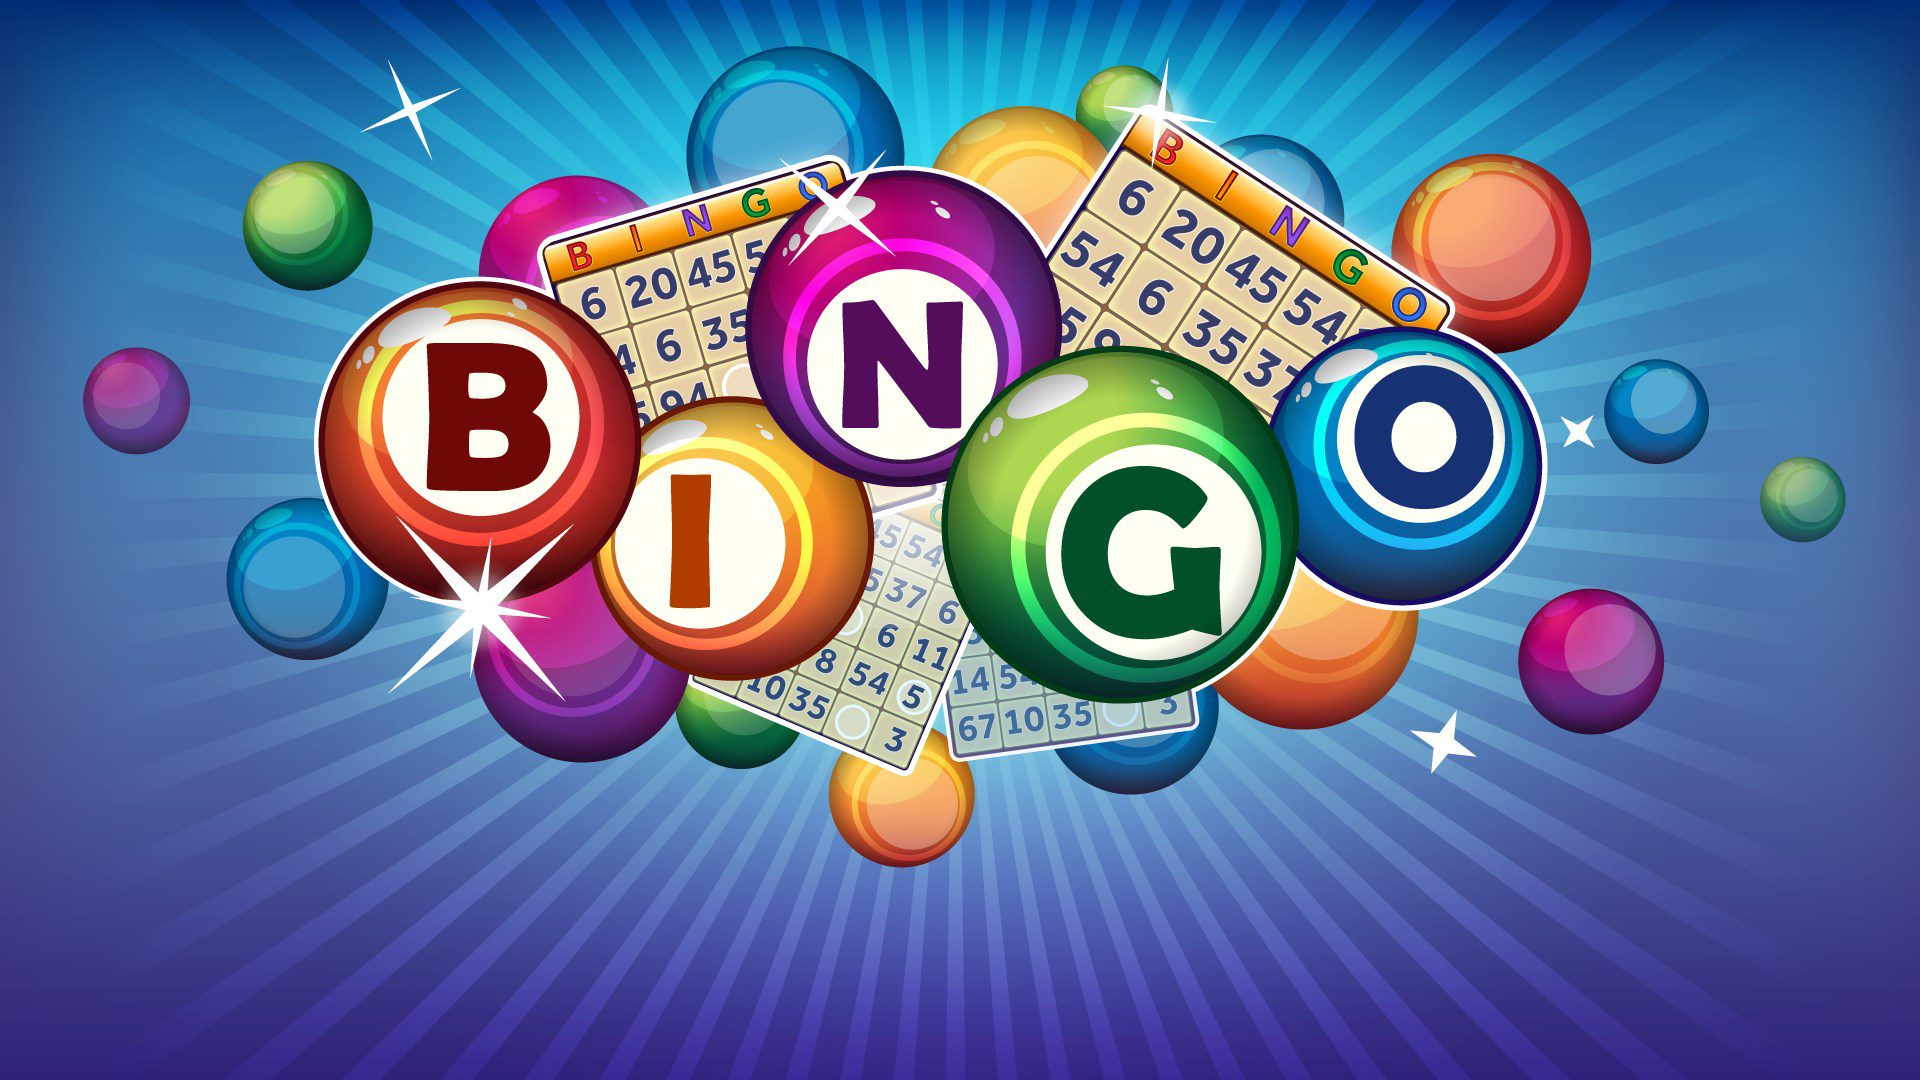 Bingo is Back!